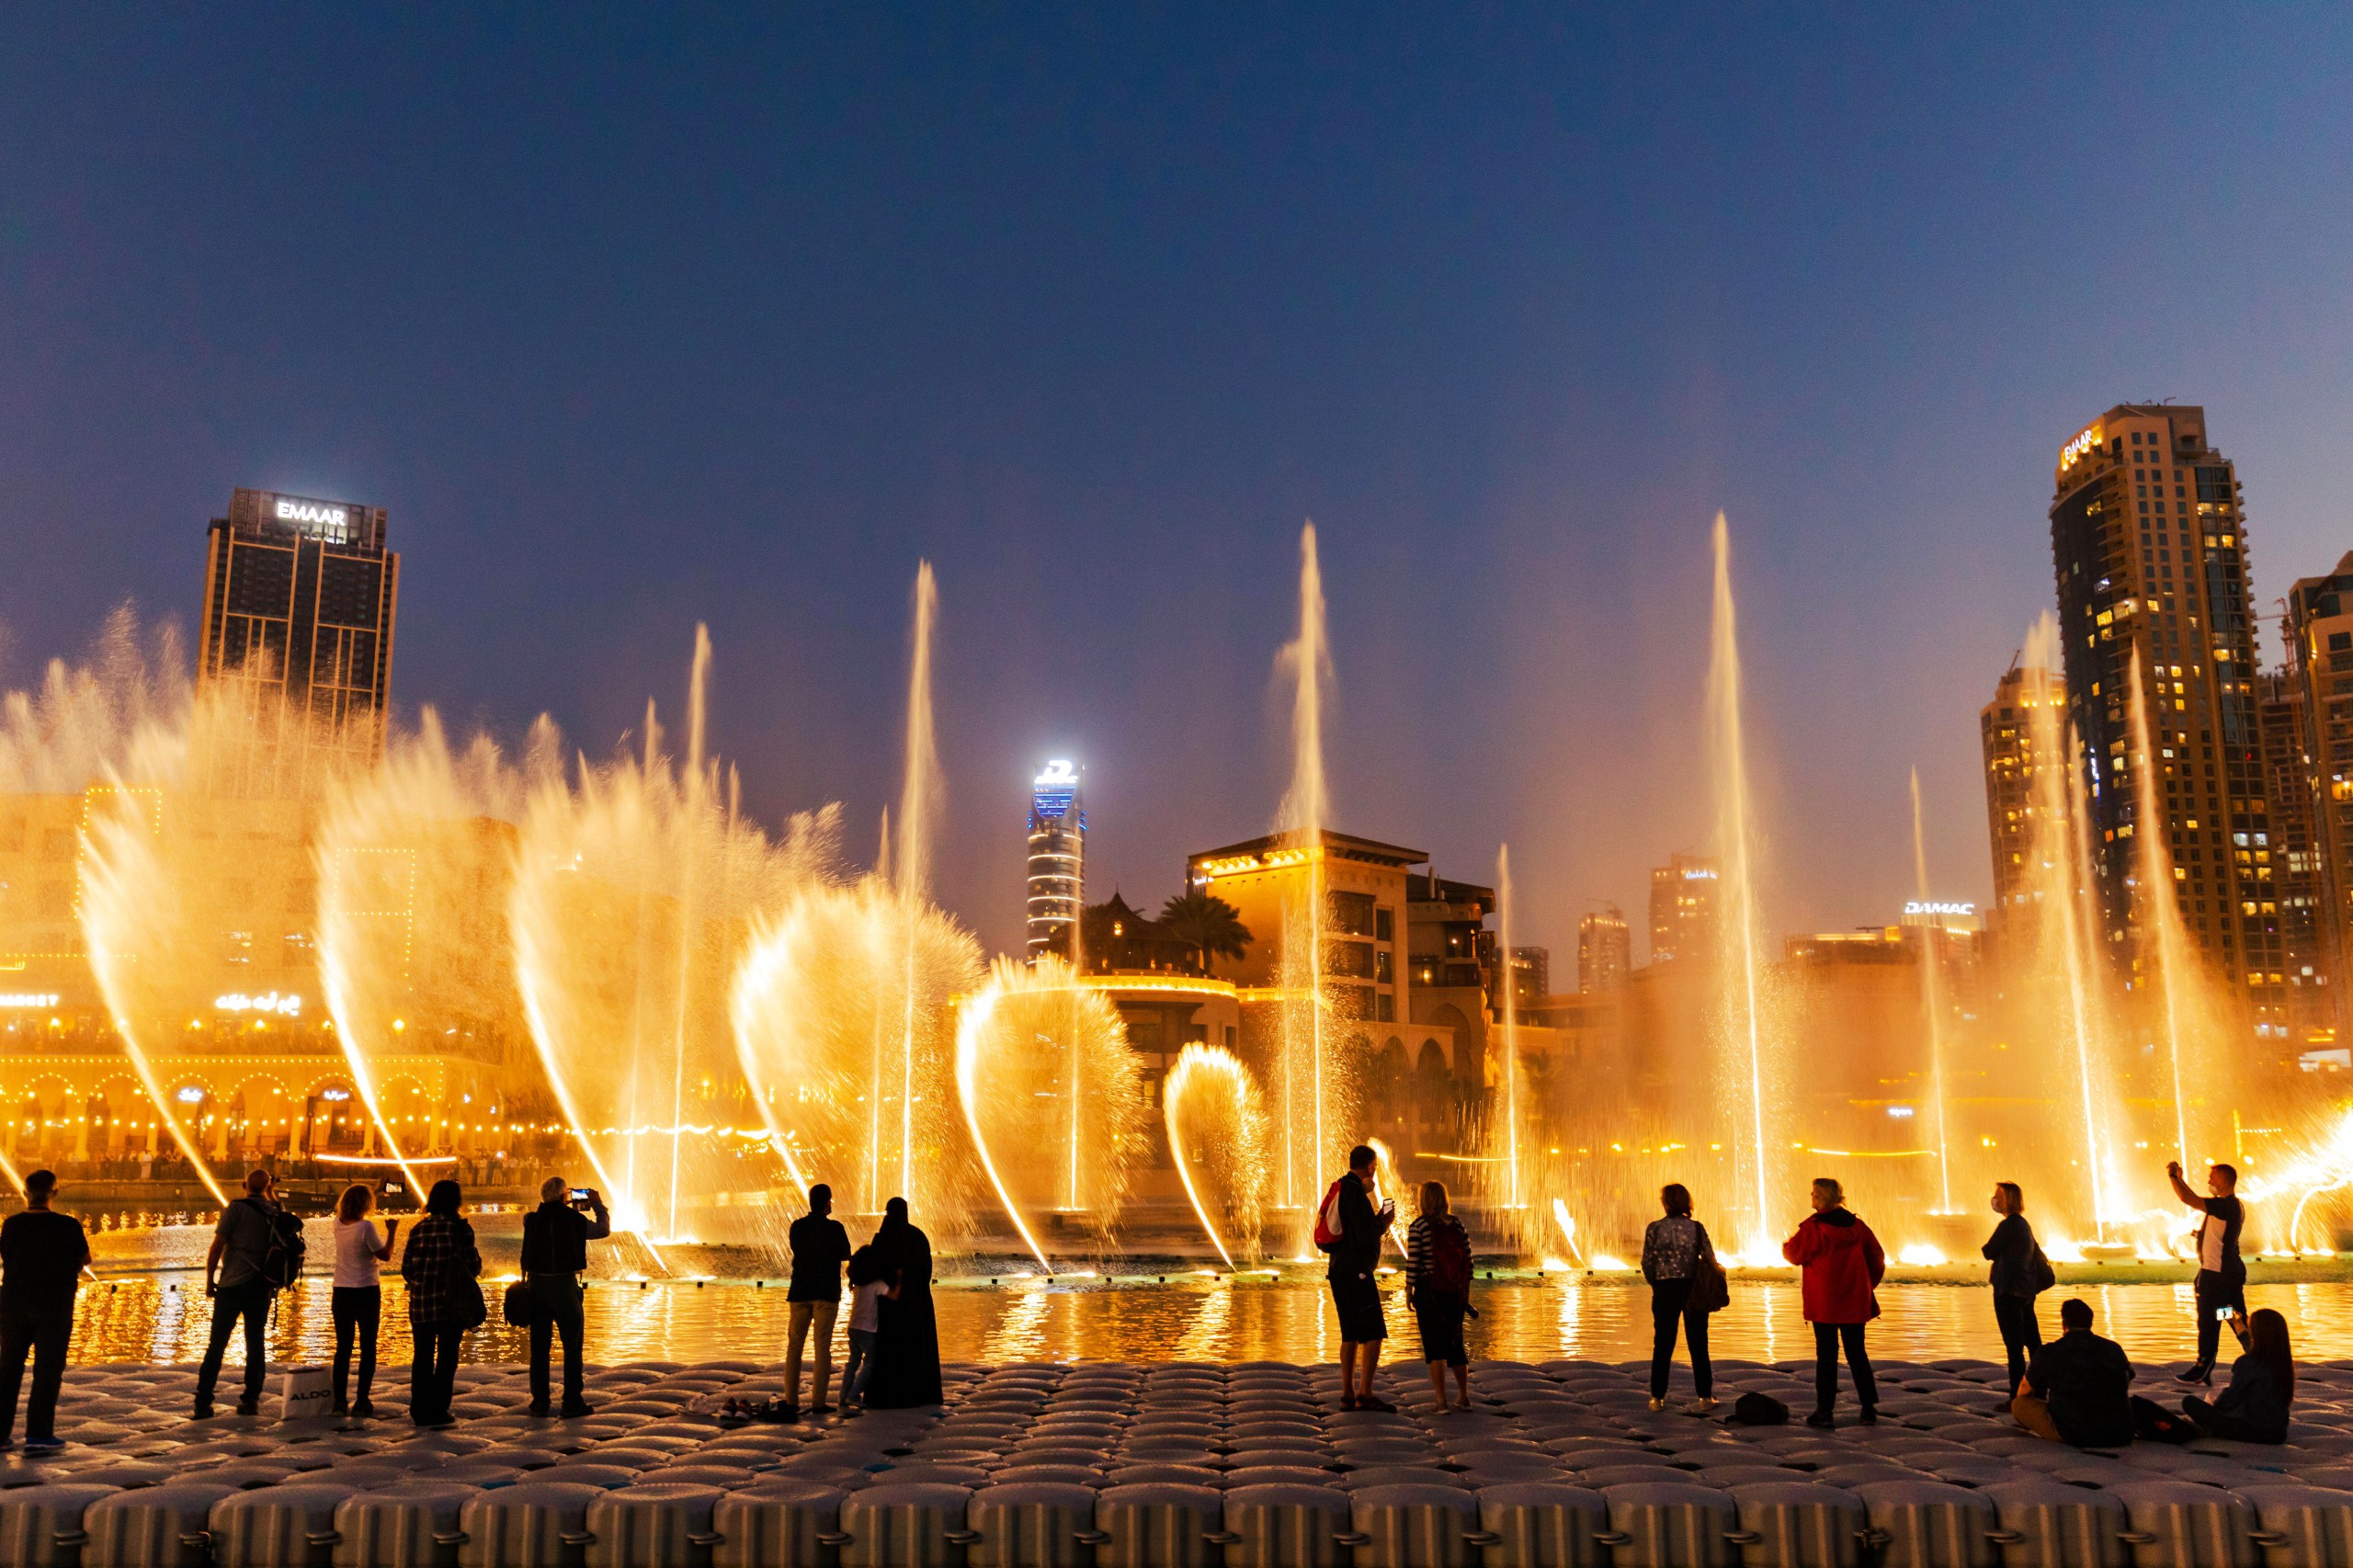 A fountain show in Dubai